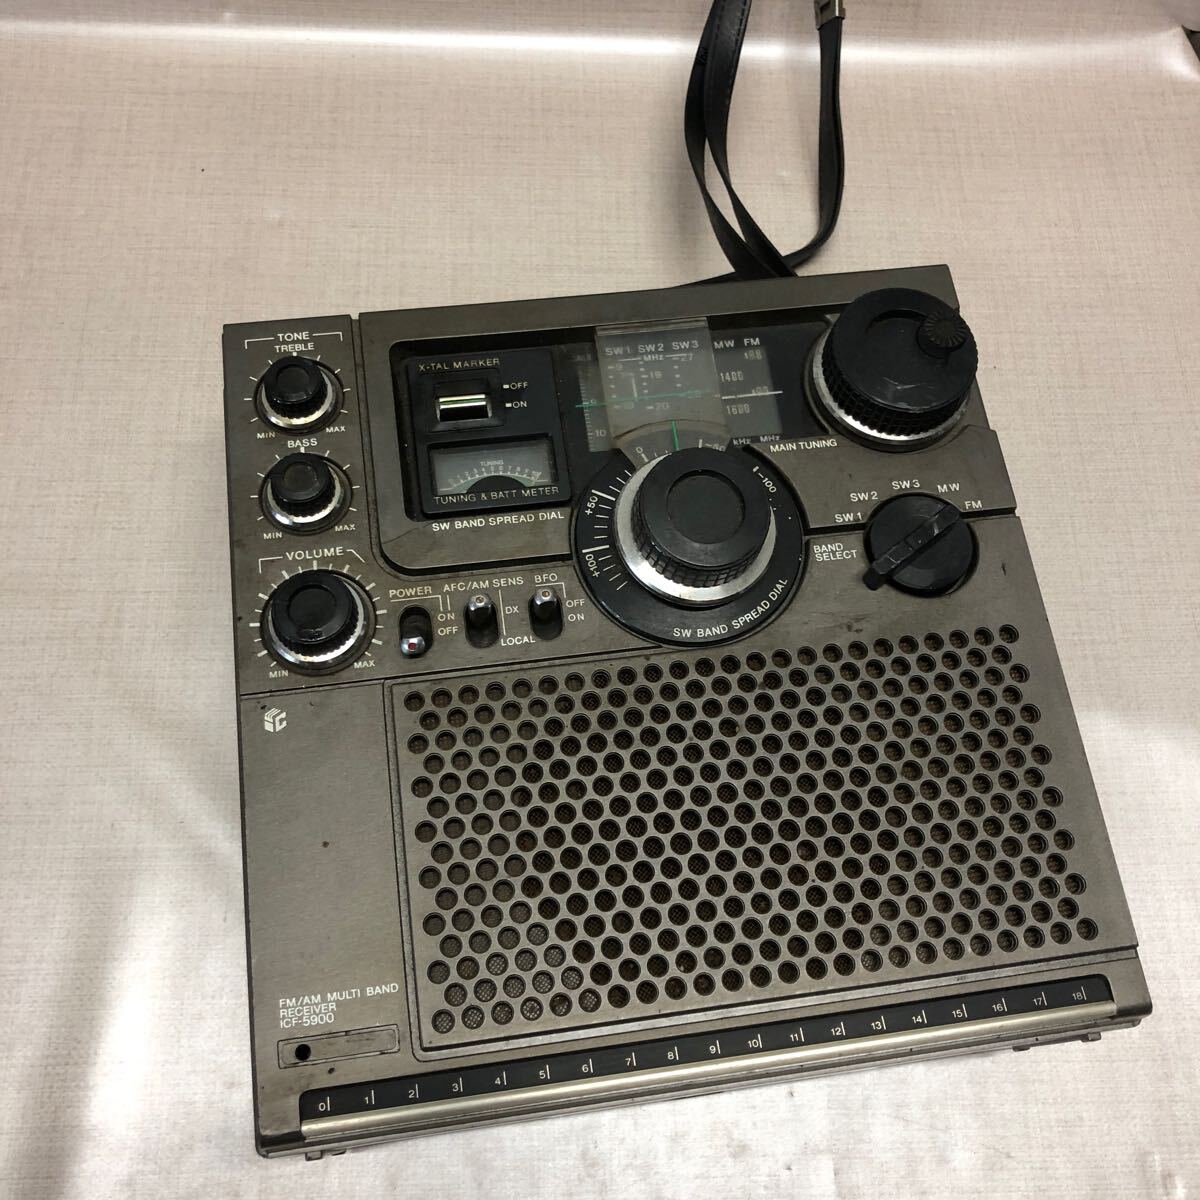 (J1243)FM受信OK SONY ソニー ICF-5900 オーディオ機器 ラジオ アンティーク 昭和レトロ 本体のみの画像3